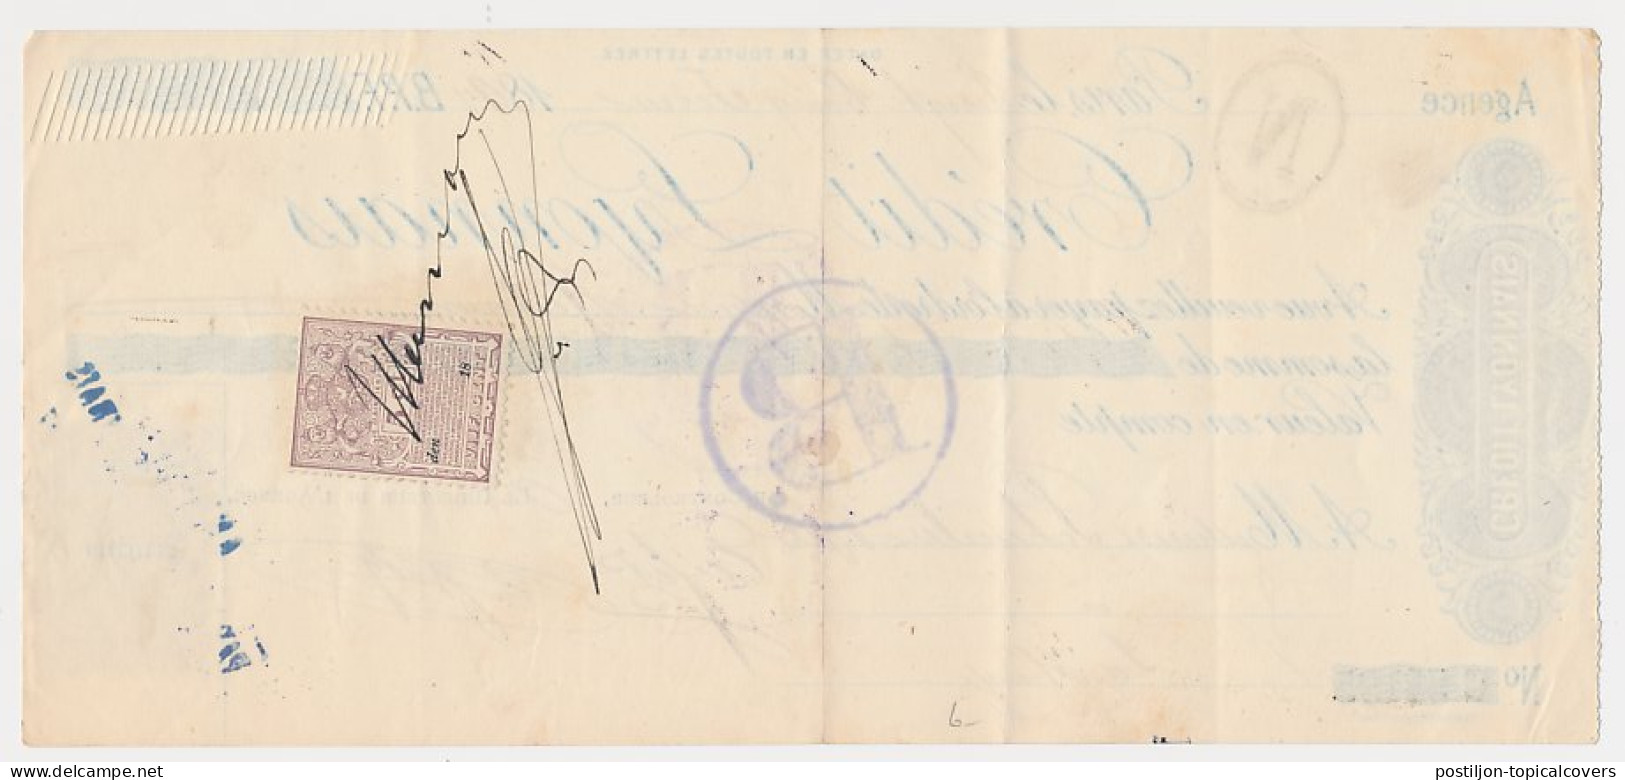 Plakzegel 5 Ct Den 18.. - Wisselbrief Den Haag 1897 - Steuermarken